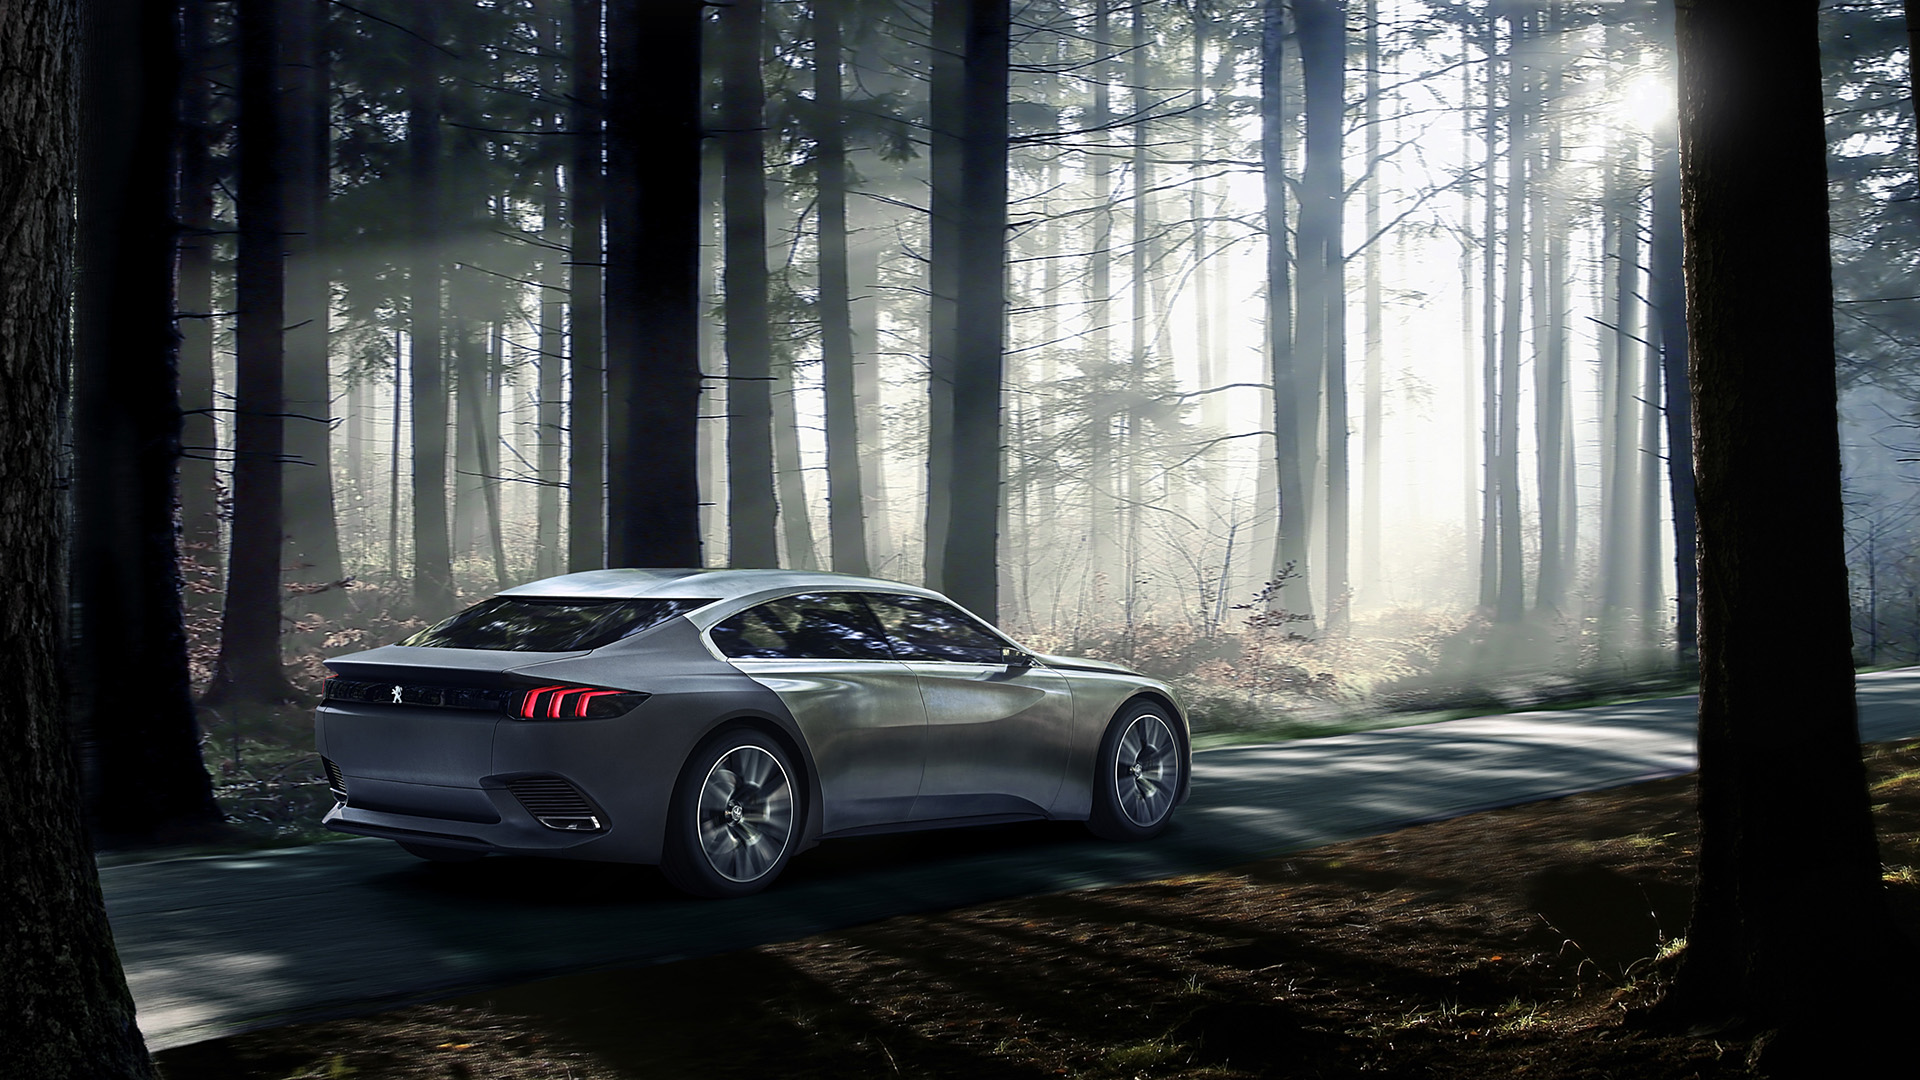  2014 Peugeot Exalt Concept Wallpaper.